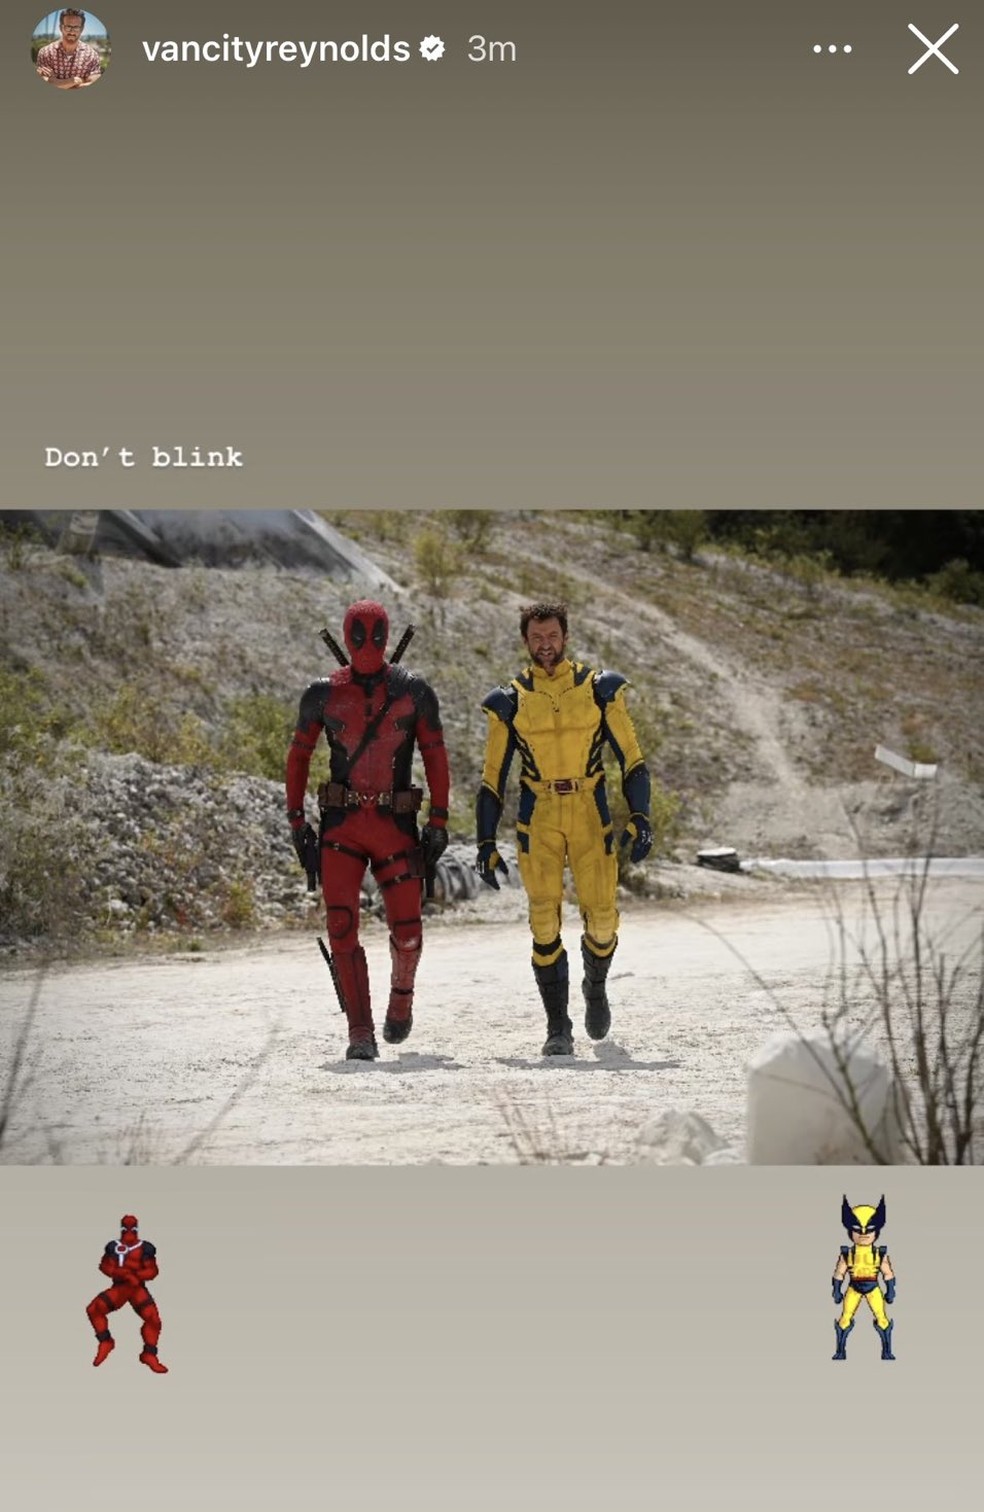 Quando estreia Deadpool 3, que contará com o retorno do Wolverine?